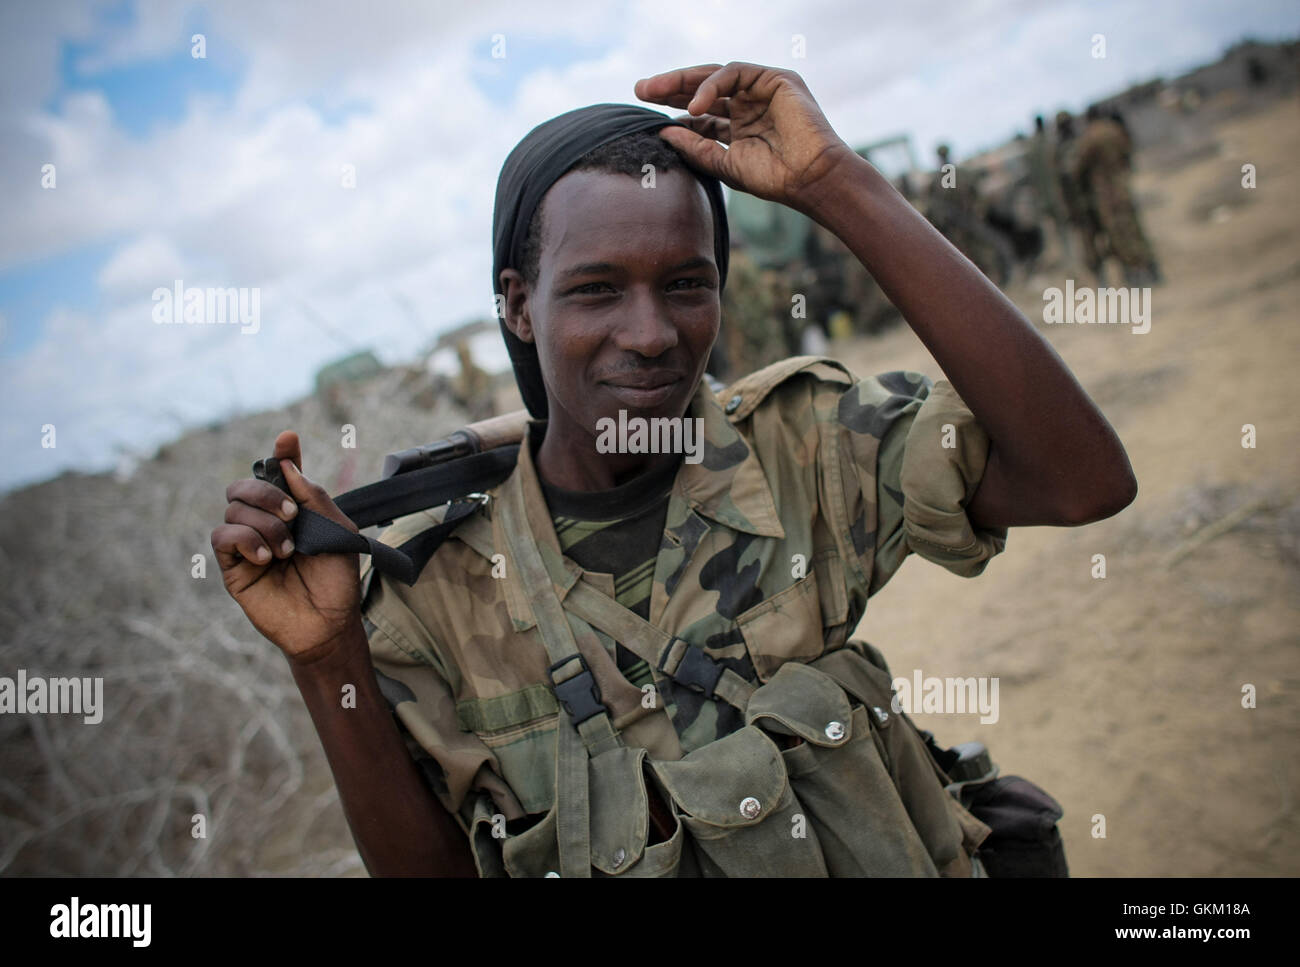 La somalie. Asa'moja / Kisamayo : Dans un document publié par la photographie Union africaine-ONU de l'équipe de support d'information le 01 octobre, un soldat de l'armée nationale somalienne (SNA) gestes dans Asa'moja, une zone d'environ 7km à l'extérieur de la ville portuaire de Kismayo en Somalie. Pour les deux derniers mois, la Mission de l'Union africaine en Somalie (AMISOM) Contingent Kenyan à l'appui de la SNA n'a cessé de libérer et dans les villages du sud de la Somalie a officiellement sous le contrôle de l'affilié à Al Qaïda groupe extrémiste Al Shabaab, qui les a portés à la périphérie est de la dernière grande strongh Banque D'Images